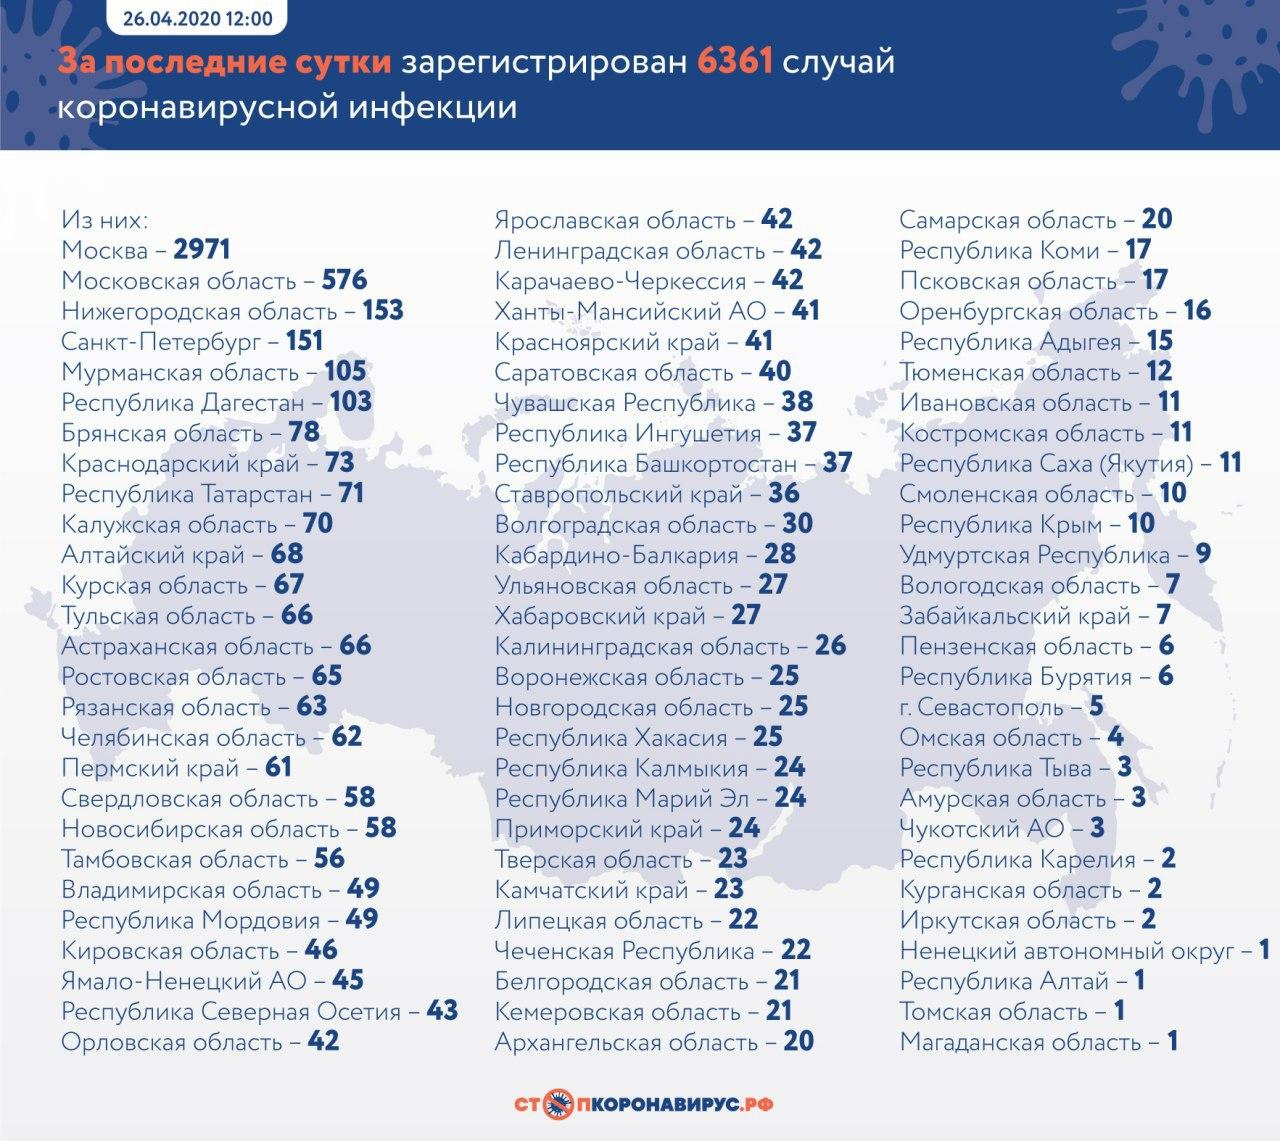 +41 зараженный коронавирусной инфекцией за сутки в Красноярском крае